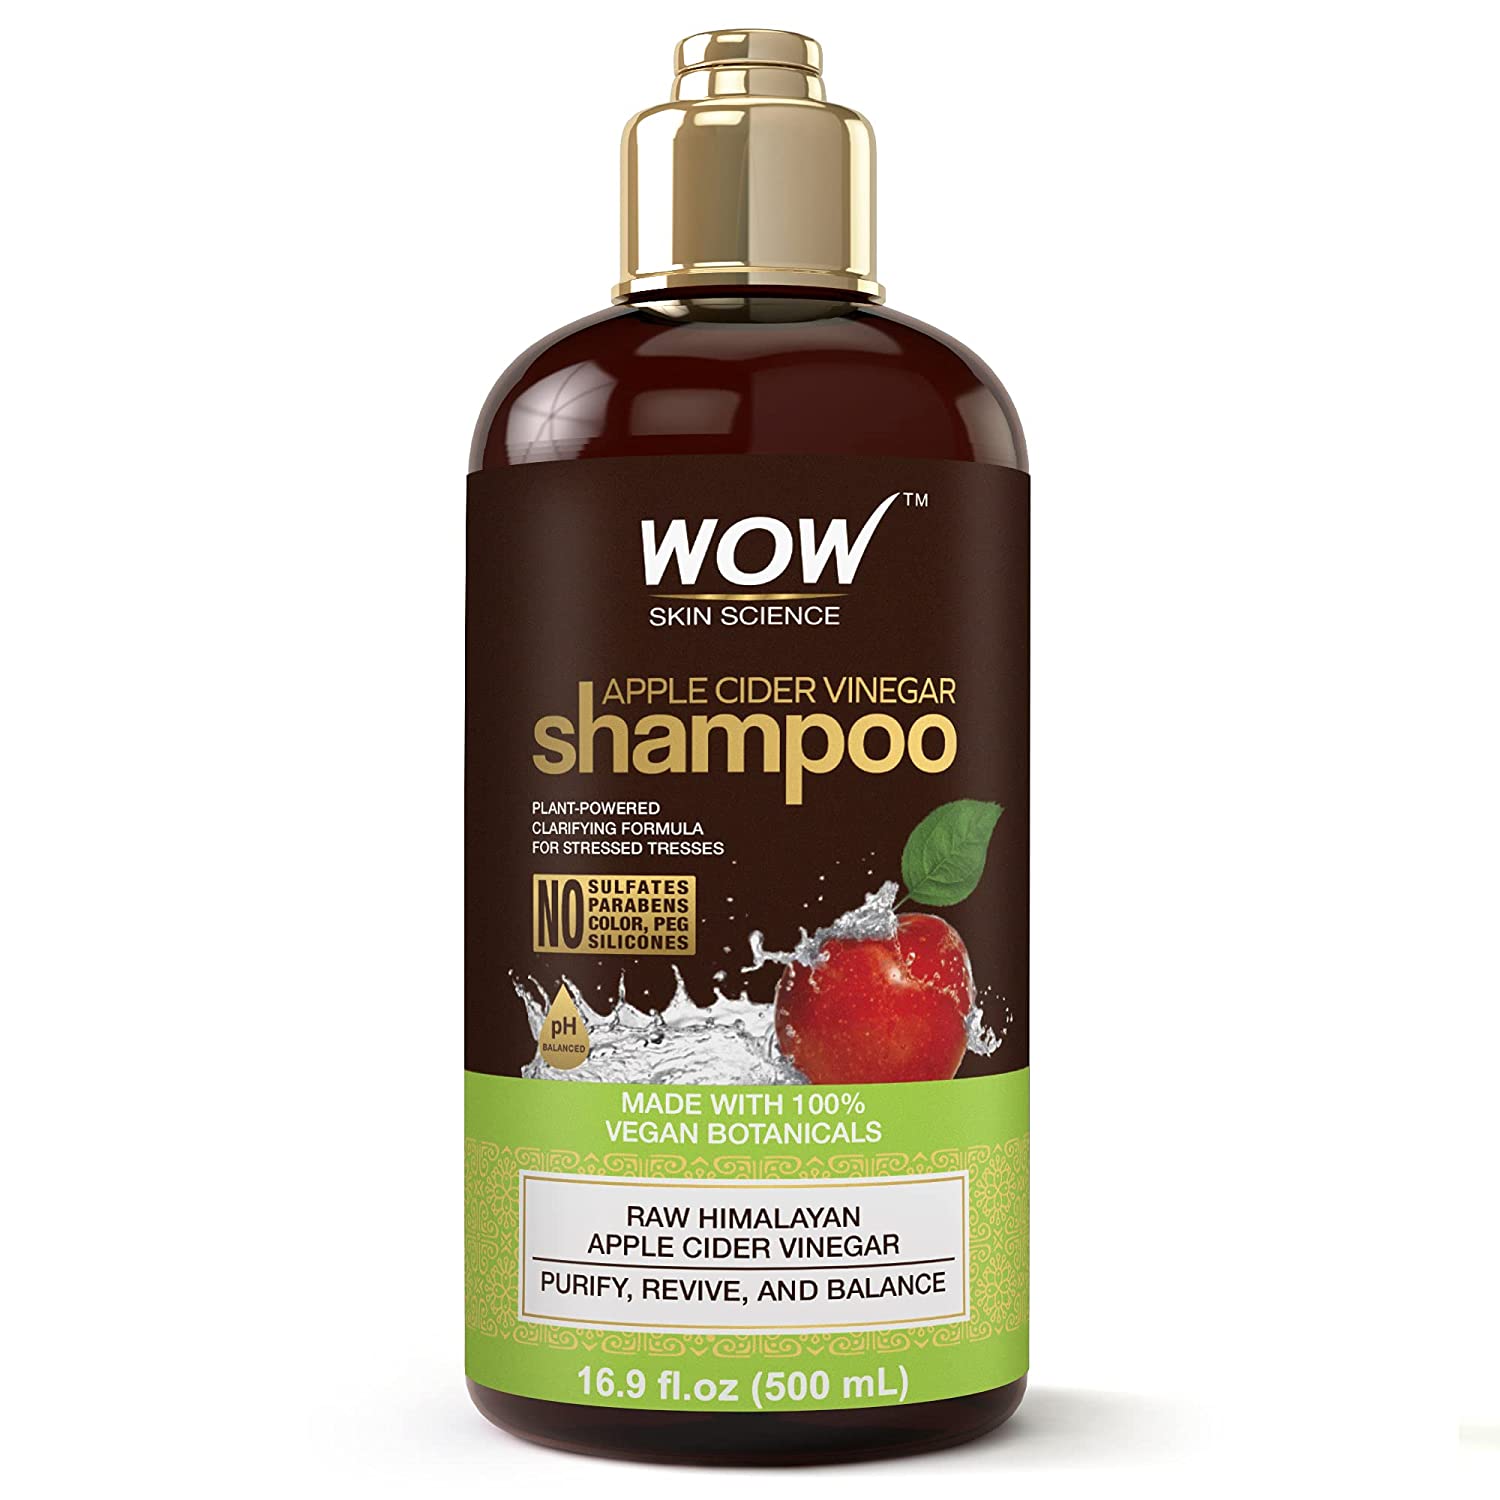 best shampoo for oily hair